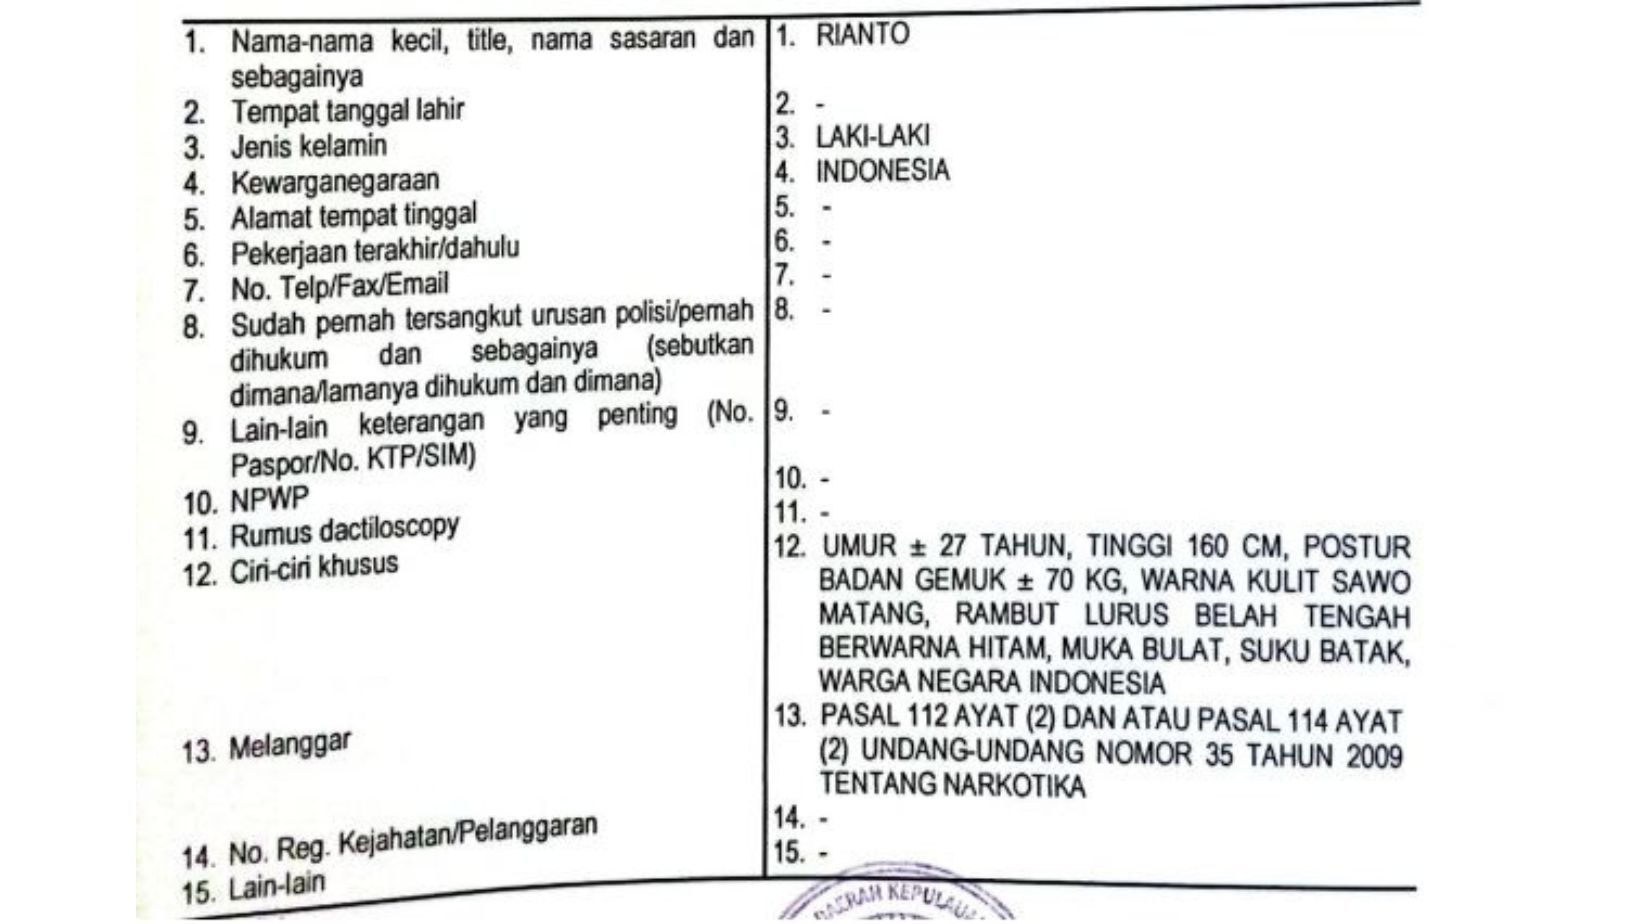 Polda Kepri menerbitkan Daftar Pencairan Orang (DPO) terhadap 2 orang terduga keras komplotan jaringan narkoba Tanjung Pinang (Kepri) – Lombok (NTB)